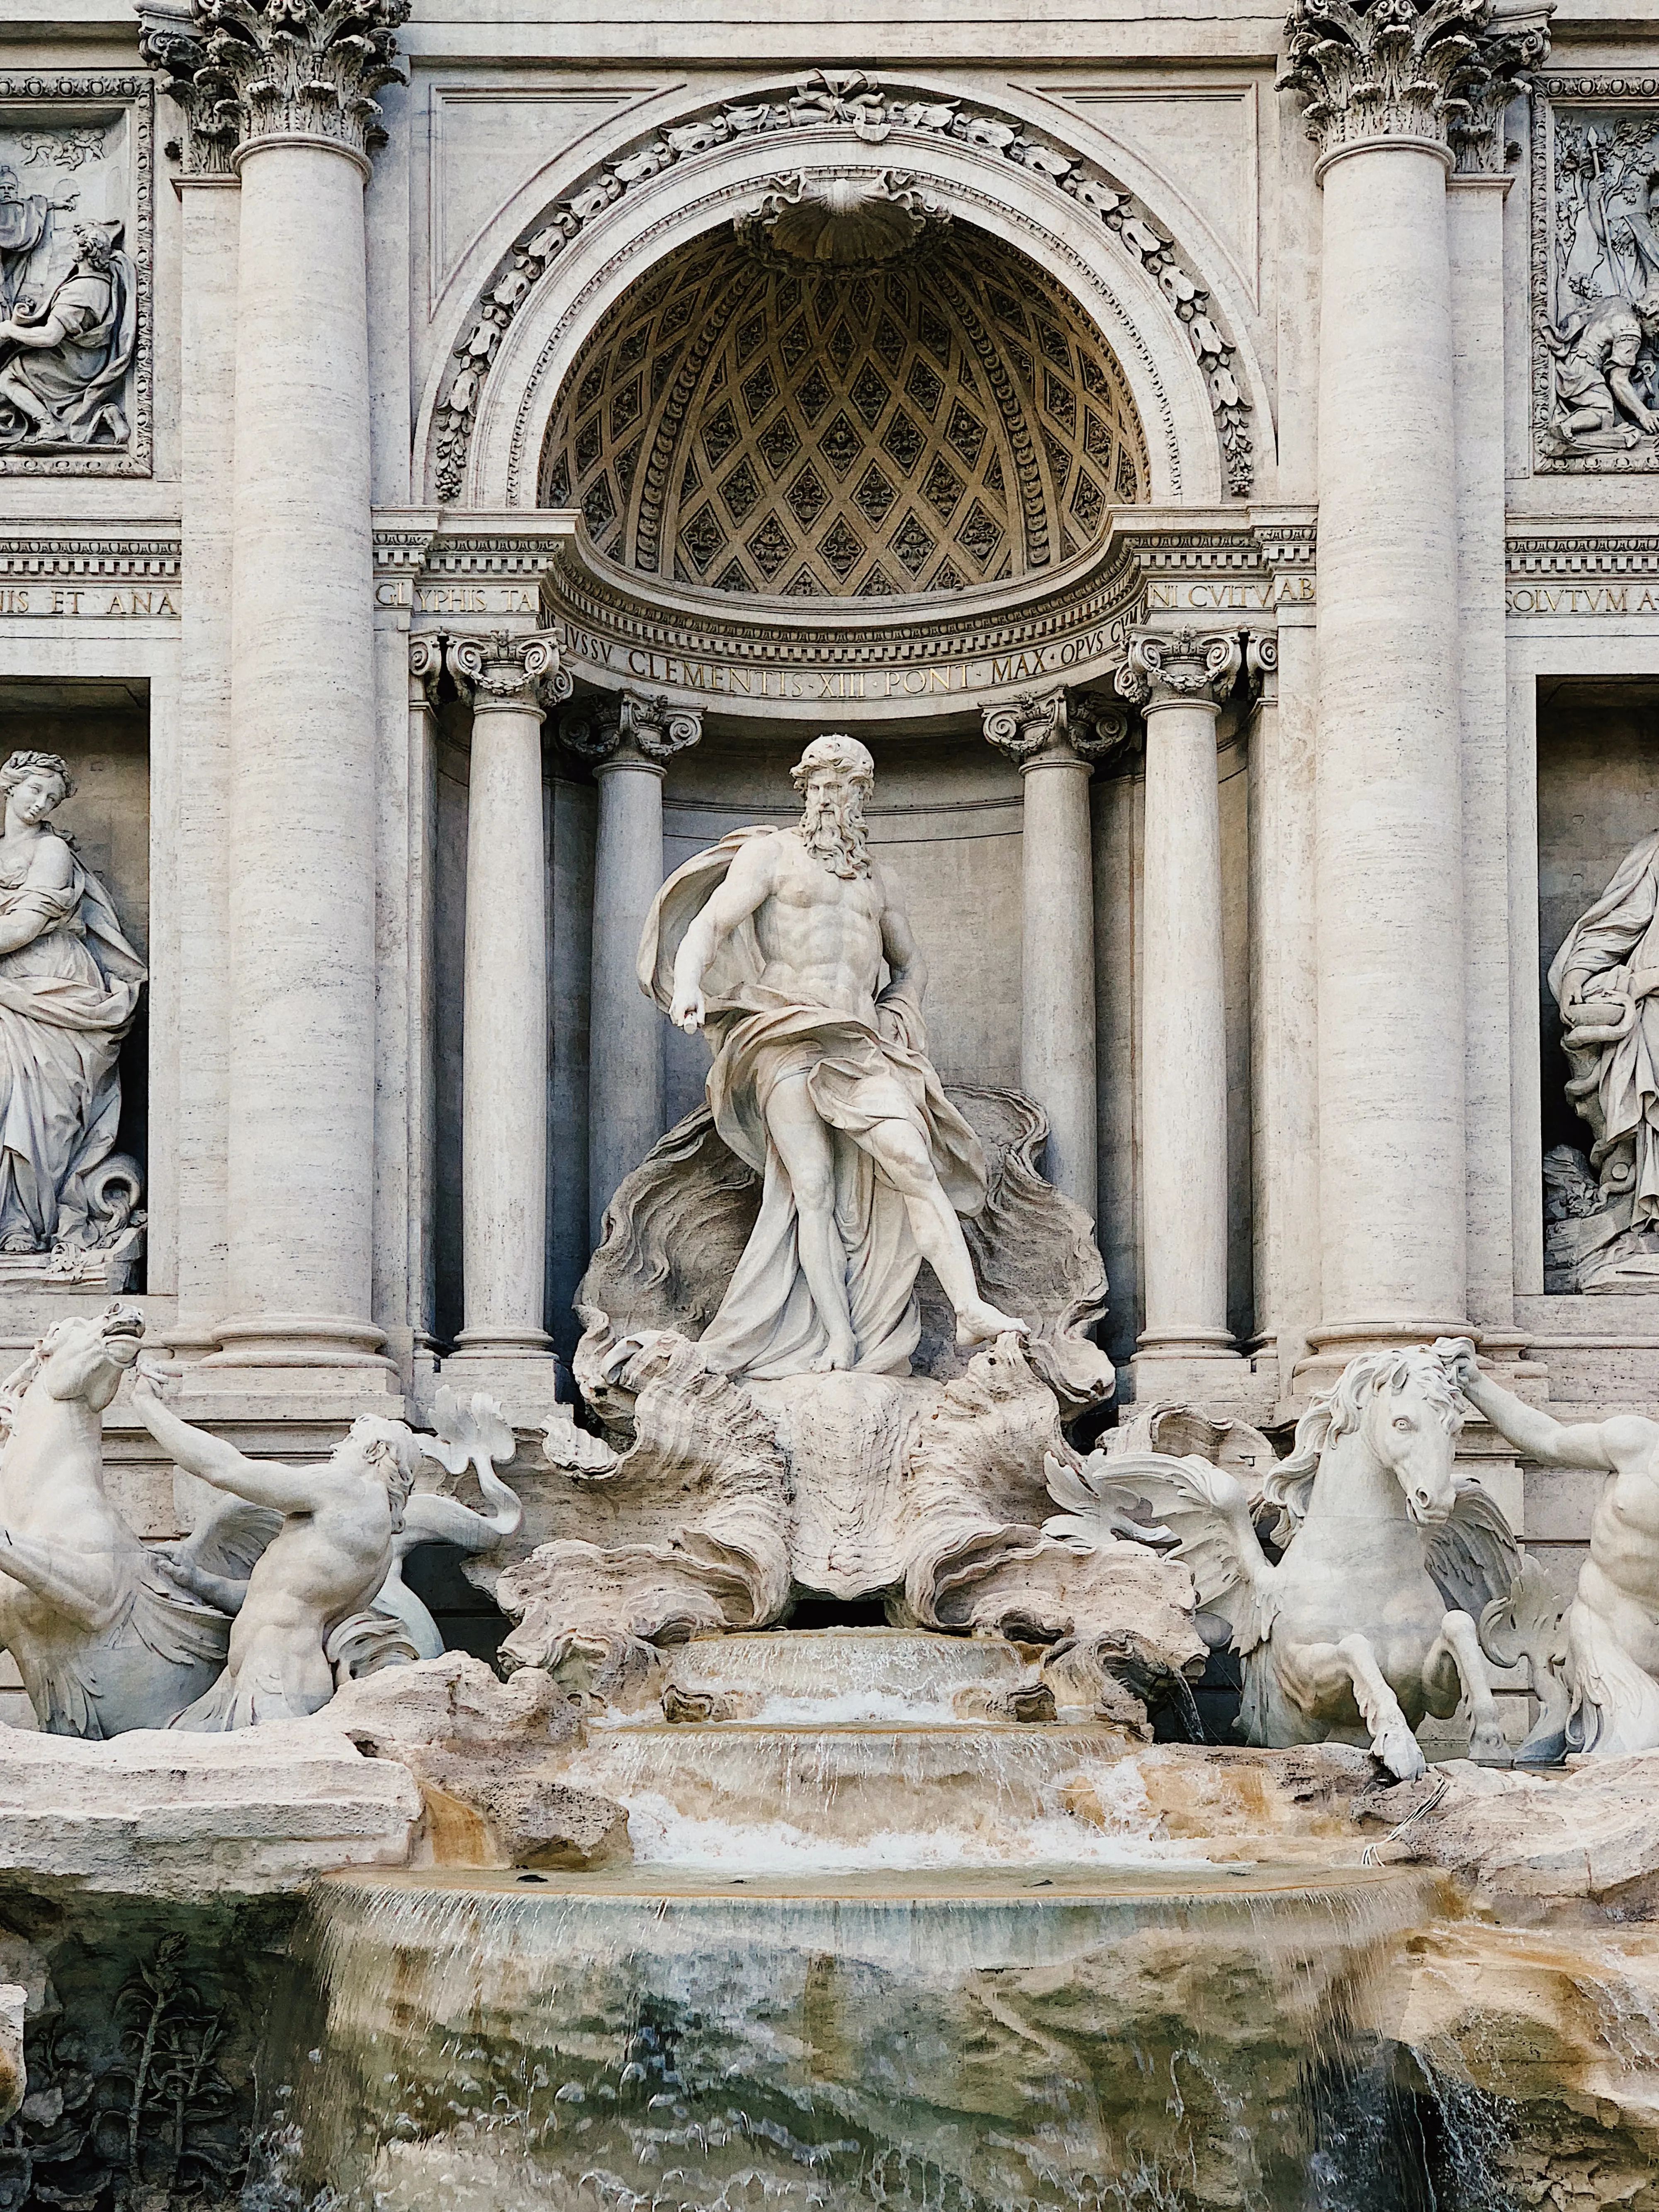 У Римі туристам хочуть обмежити доступ до фонтану Треві